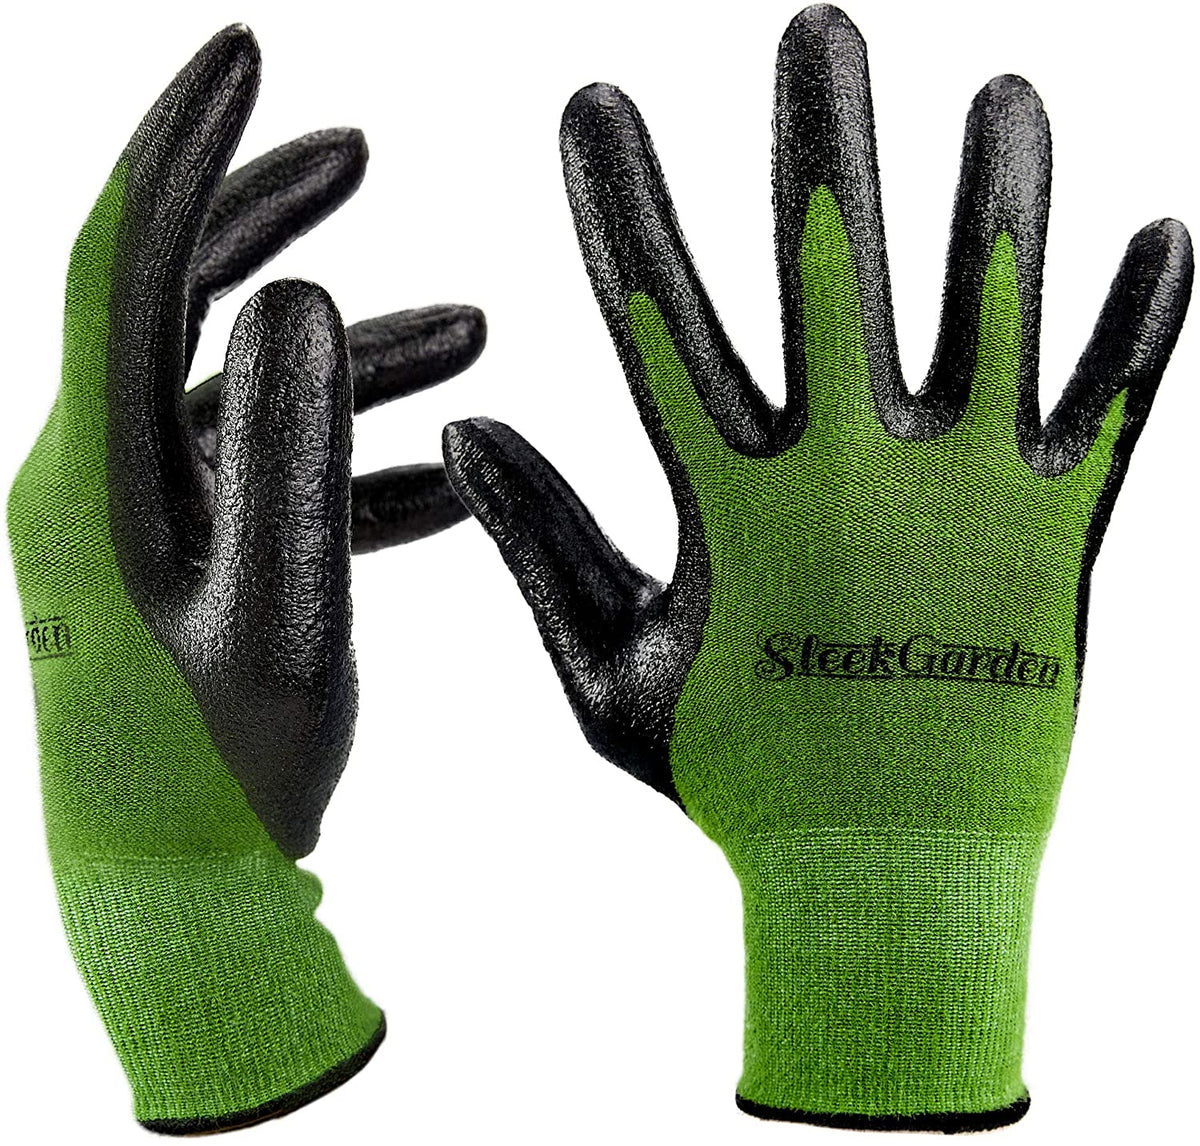 Bamboo Garden Gloves for Women and Men